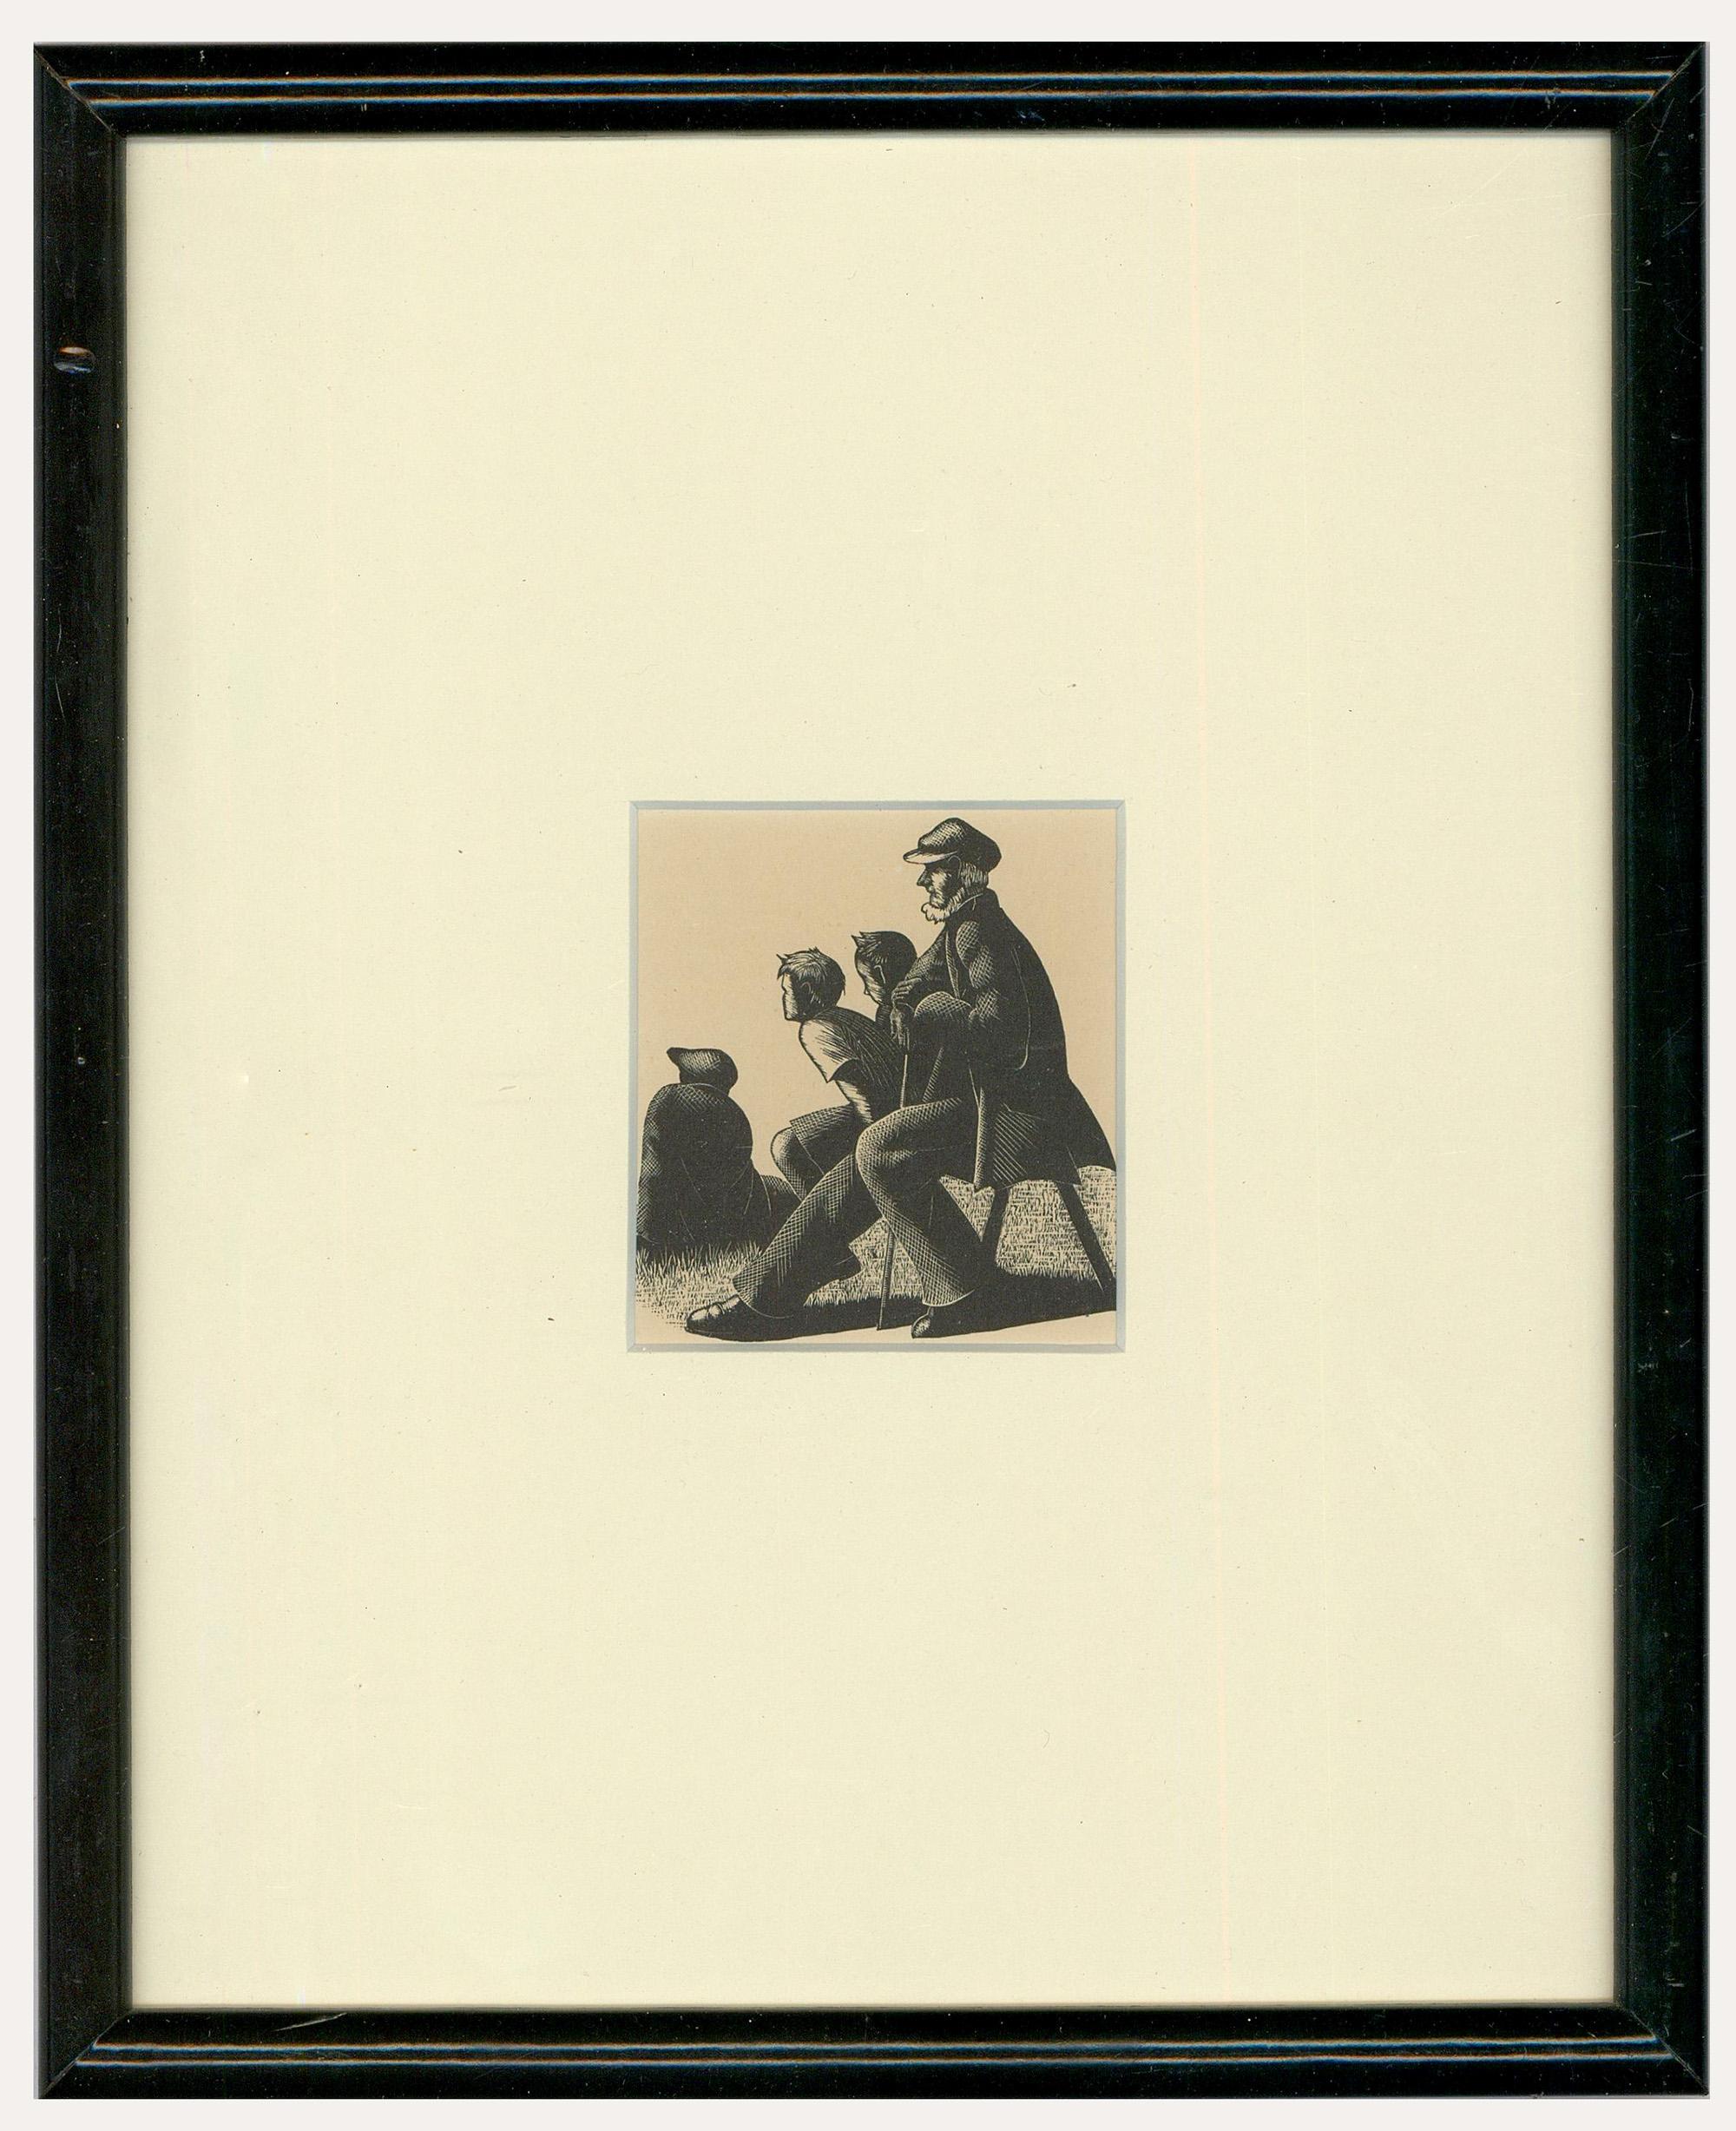 Une exquise gravure sur bois en noir et blanc de l'artiste anglais/américain de collection, Clare Leighton (1898-1989). Monté avec soin dans un cadre noir. Inscrit au verso "Première édition". Non signée. Sur le papier. Sur le papier. 